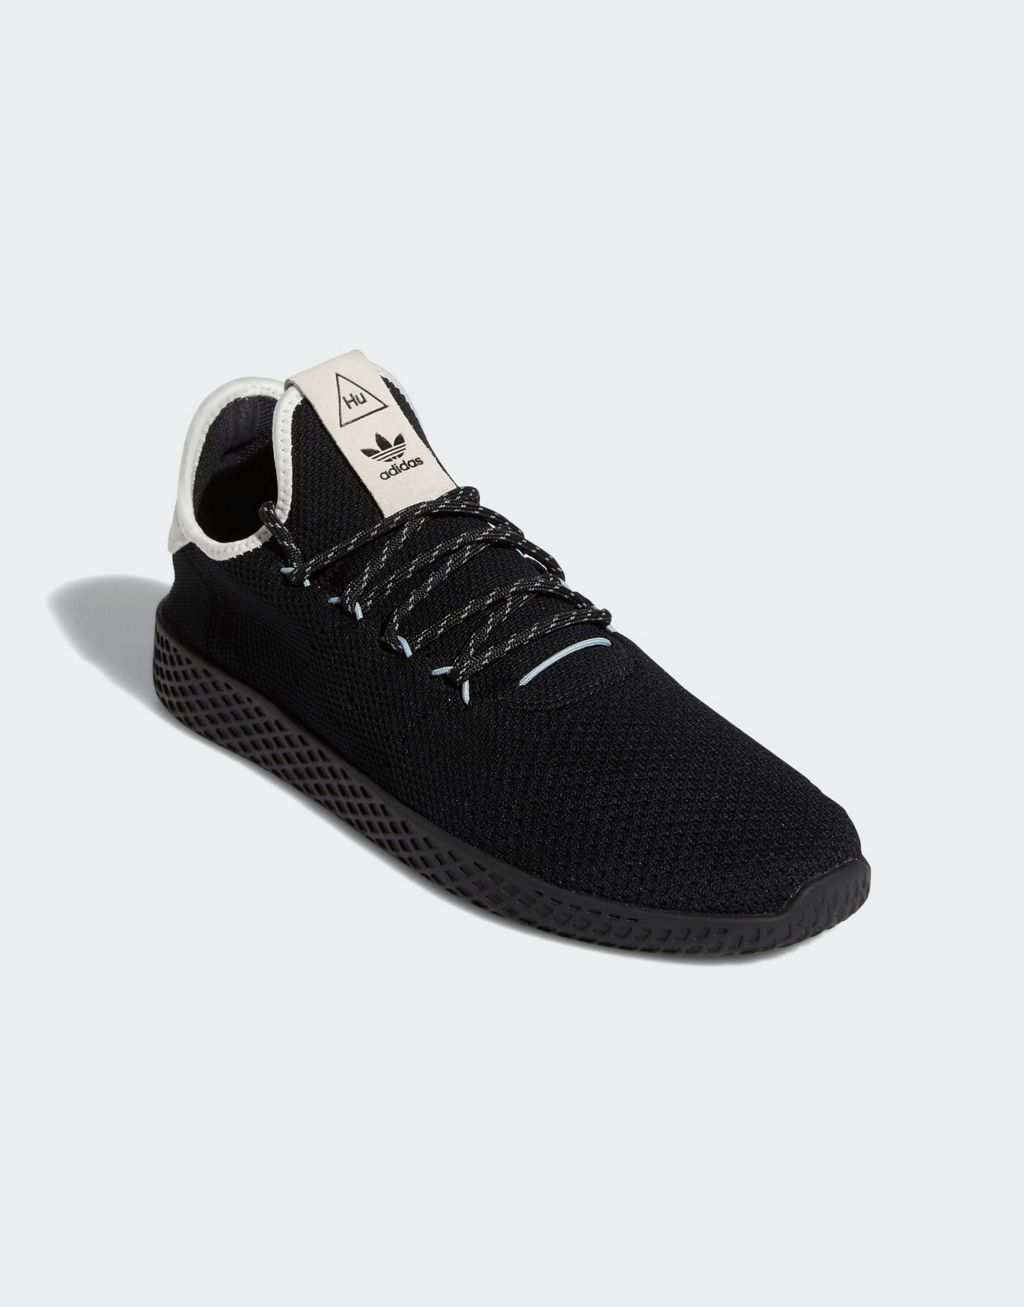 Черные кроссовки adidas Originals x Pharrell Williams Tennis HU с белой биркой на каблуке